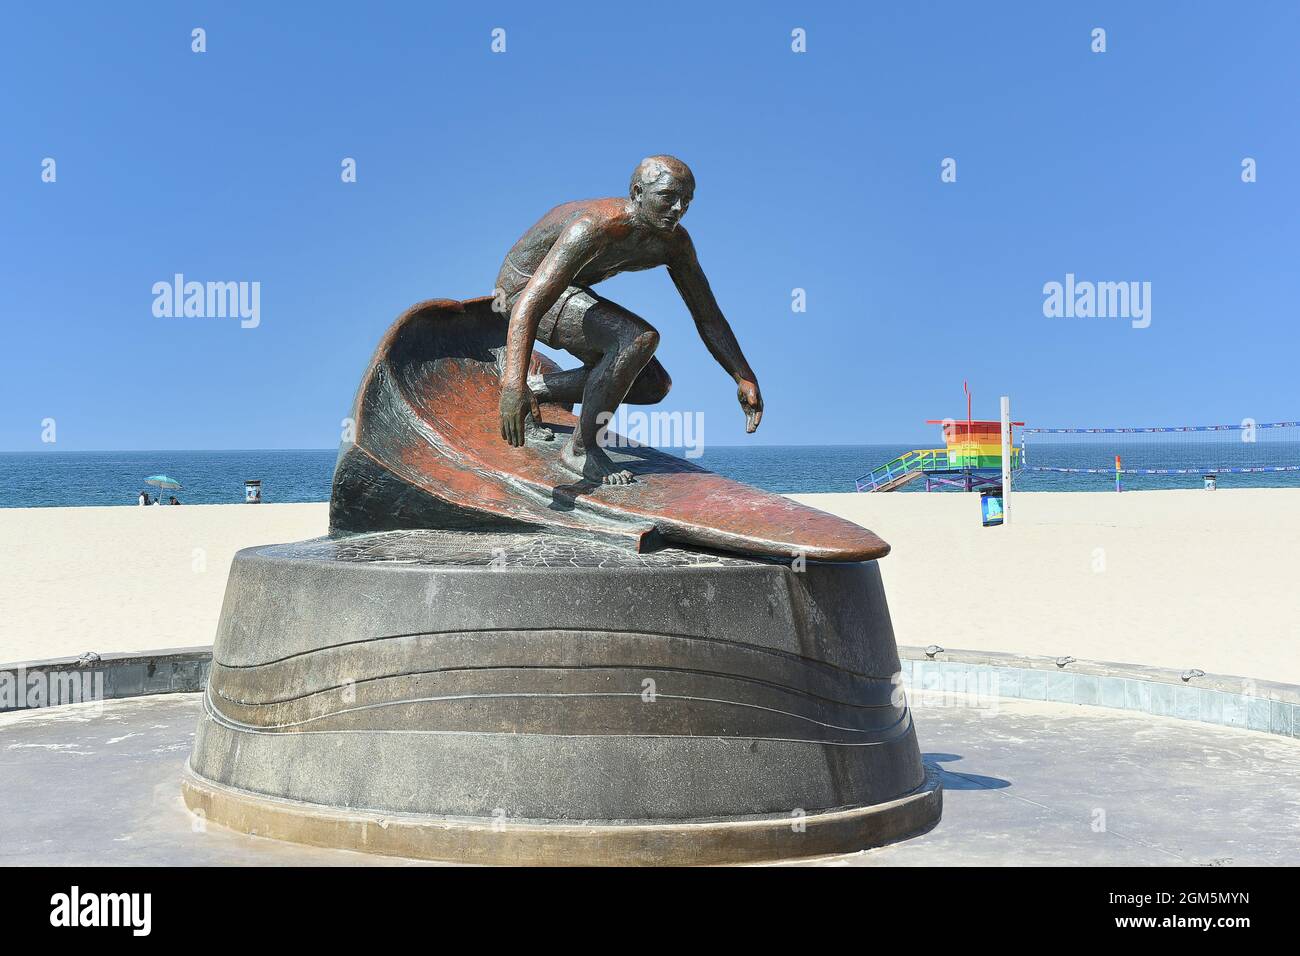 HERMOSA BEACH , CALIFORNIE - 15 SEPT 2021: Surfeur et maître-nageur légendaire, Tim Kelly est rappelé par une statue de bronze qui se trouve au pied de l'elle Banque D'Images